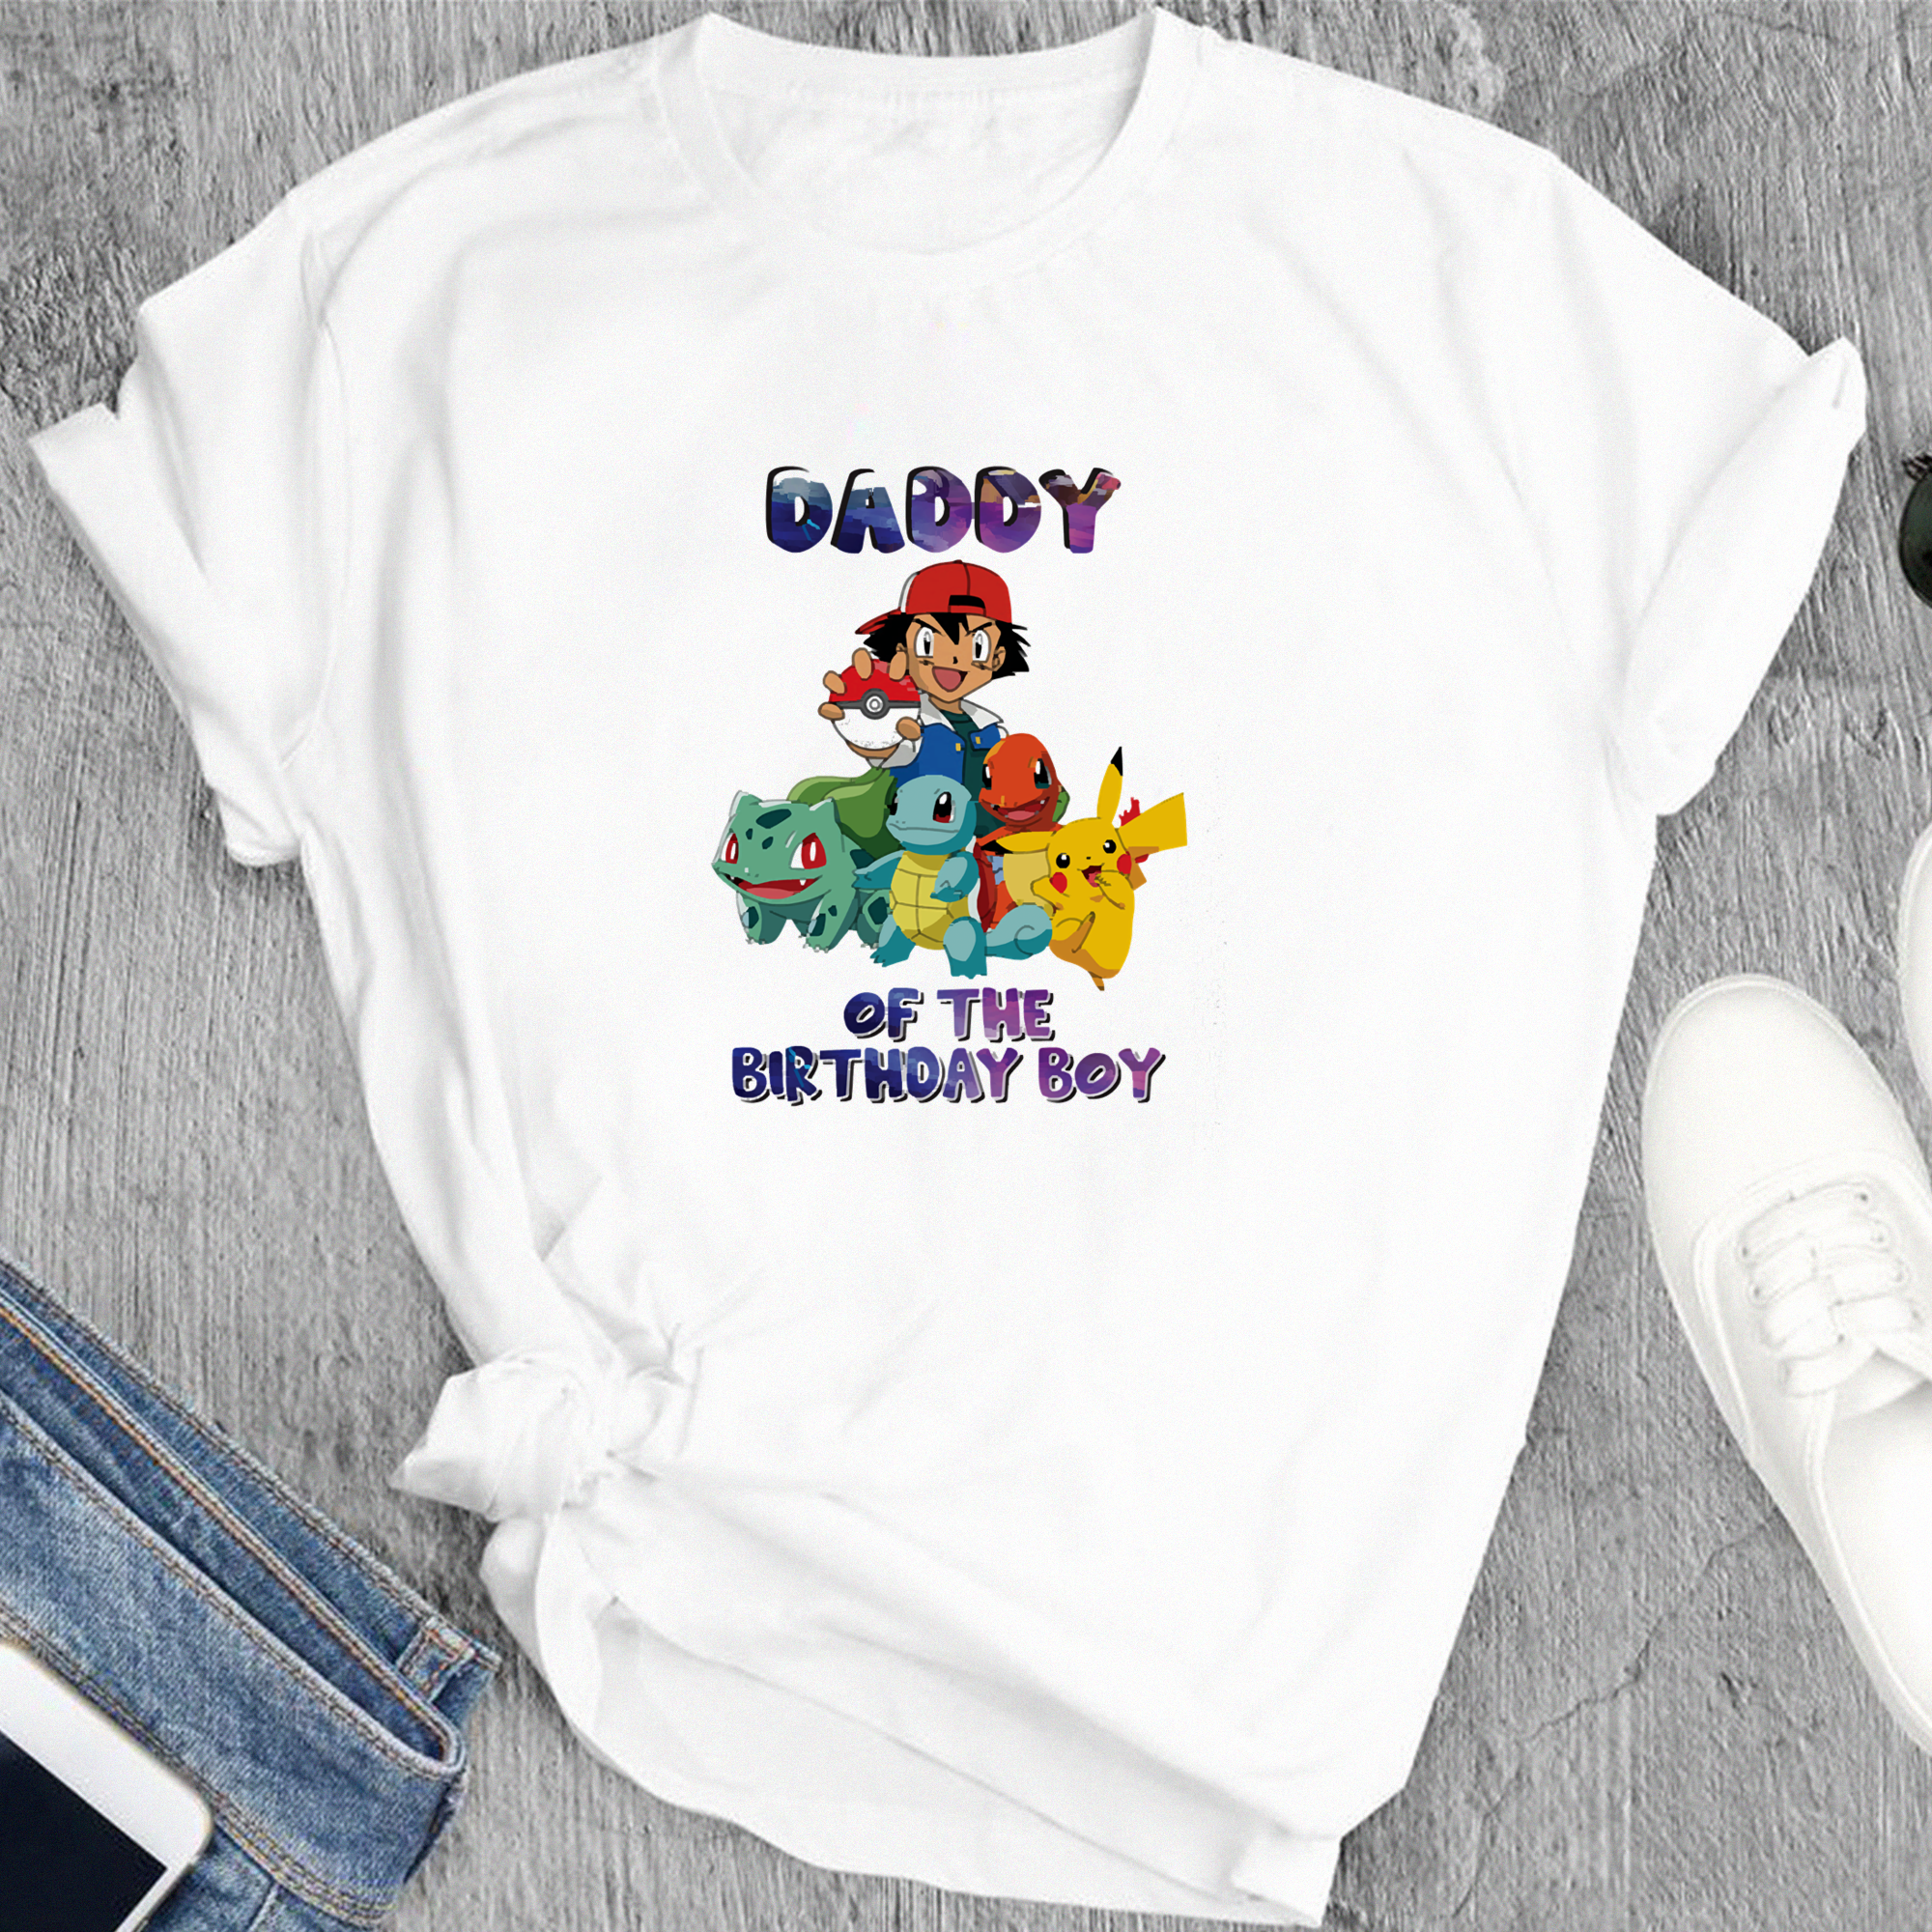 Pokemon Family Tshirt, Custom Personalized Birthday T-Shirt, Pikachu Shirt